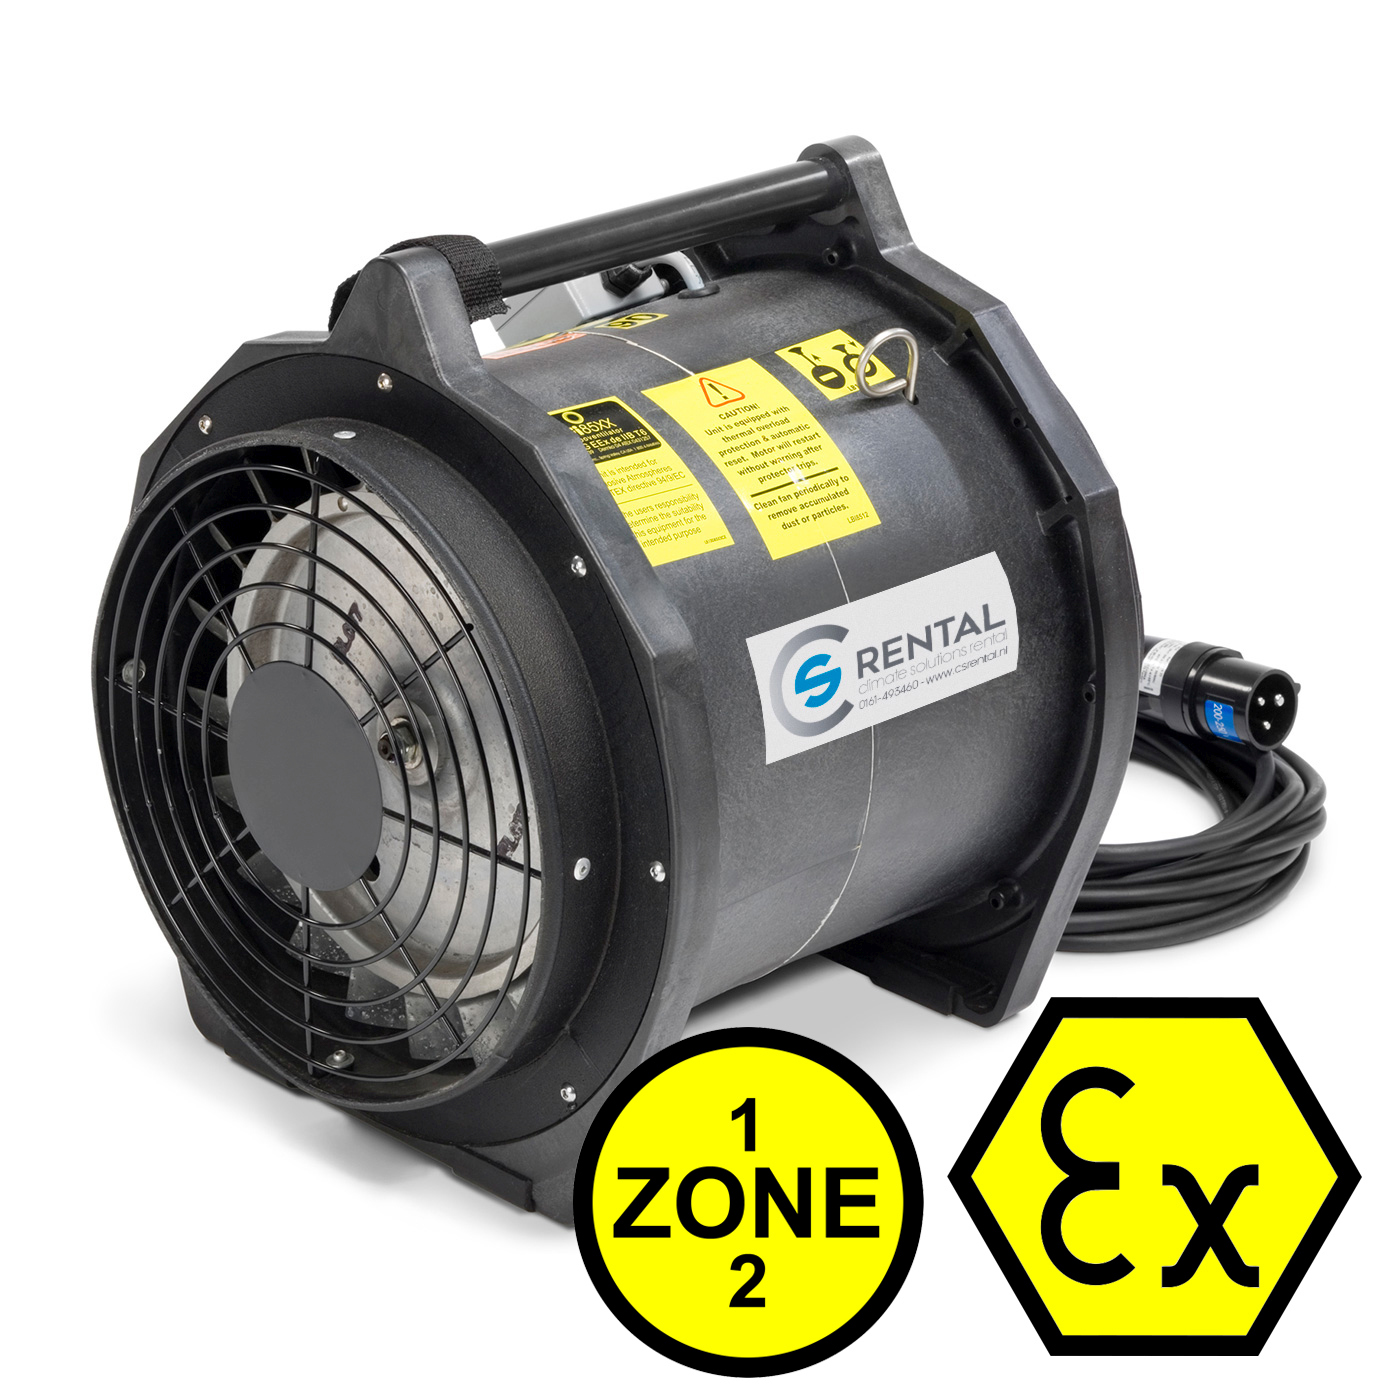 Radialventilator - Absaugung - EX - 230 Volt - 725m³/h